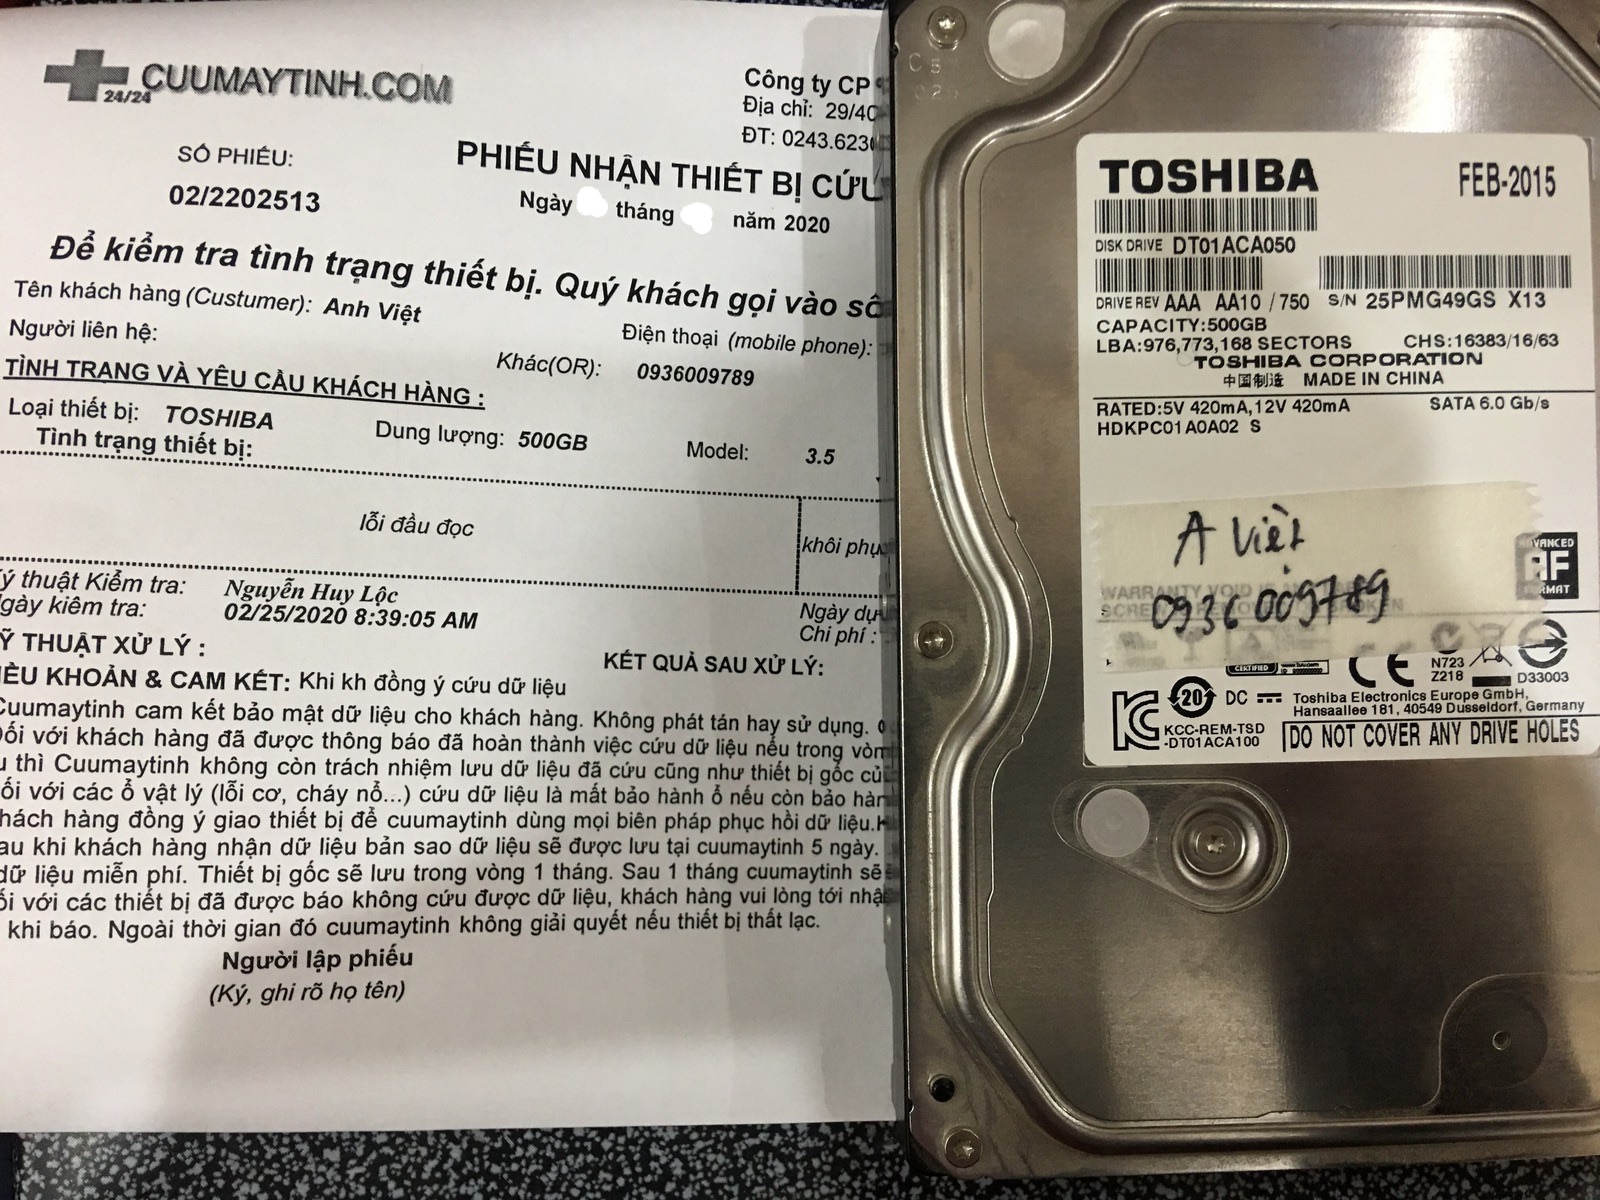 Cứu dữ liệu ổ cứng Toshiba 500GB lỗi đầu đọc 11/03/2020 - cuumaytinh